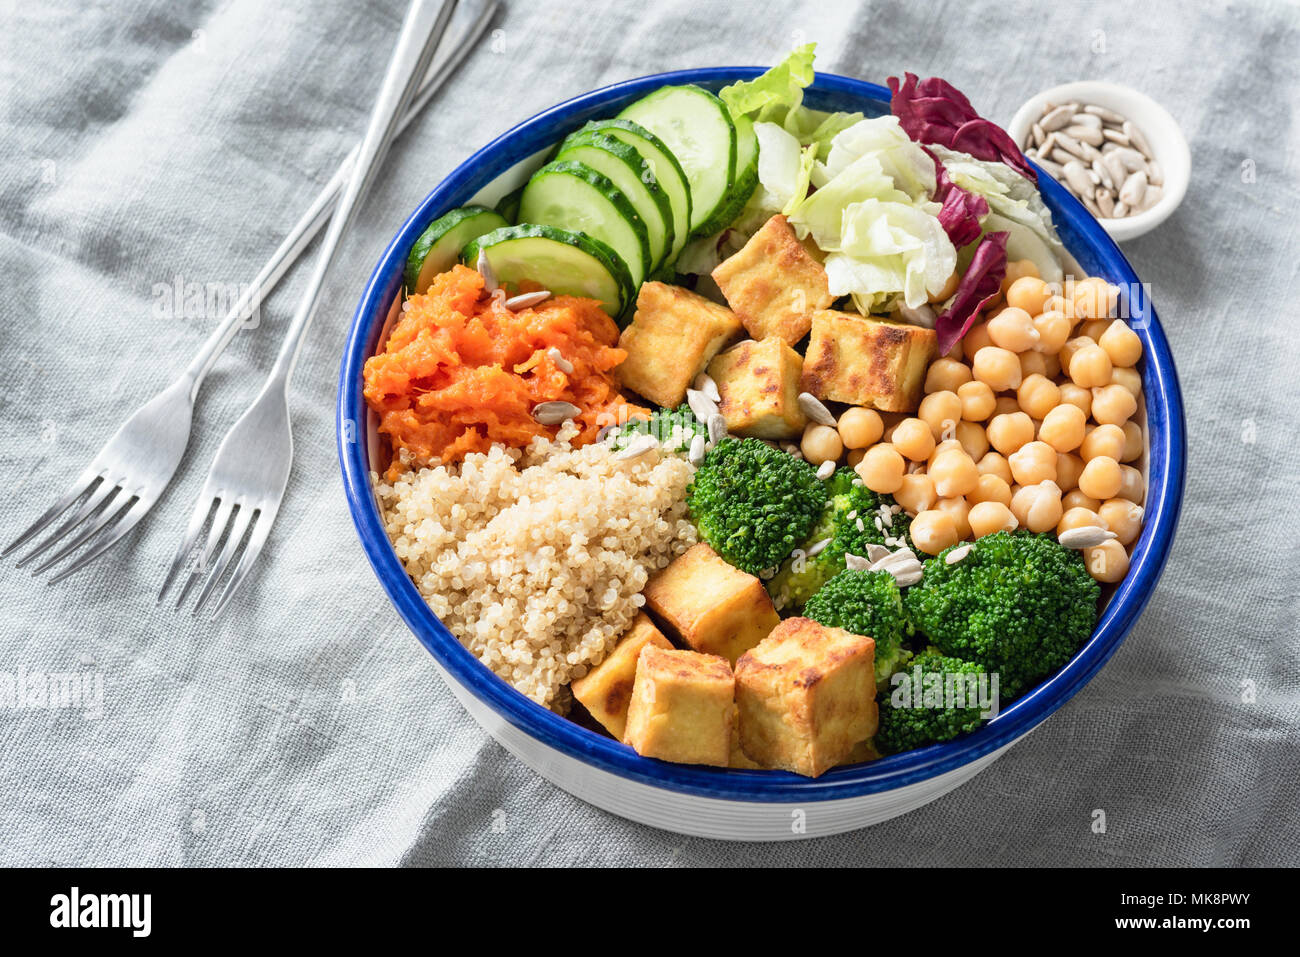 Bol bouddha nourrissante avec le tofu, le quinoa et les légumes. La saine alimentation, mode de vie sain, l'alimentation végétalienne, régime végétarien, concept de vie moderne. Col Banque D'Images